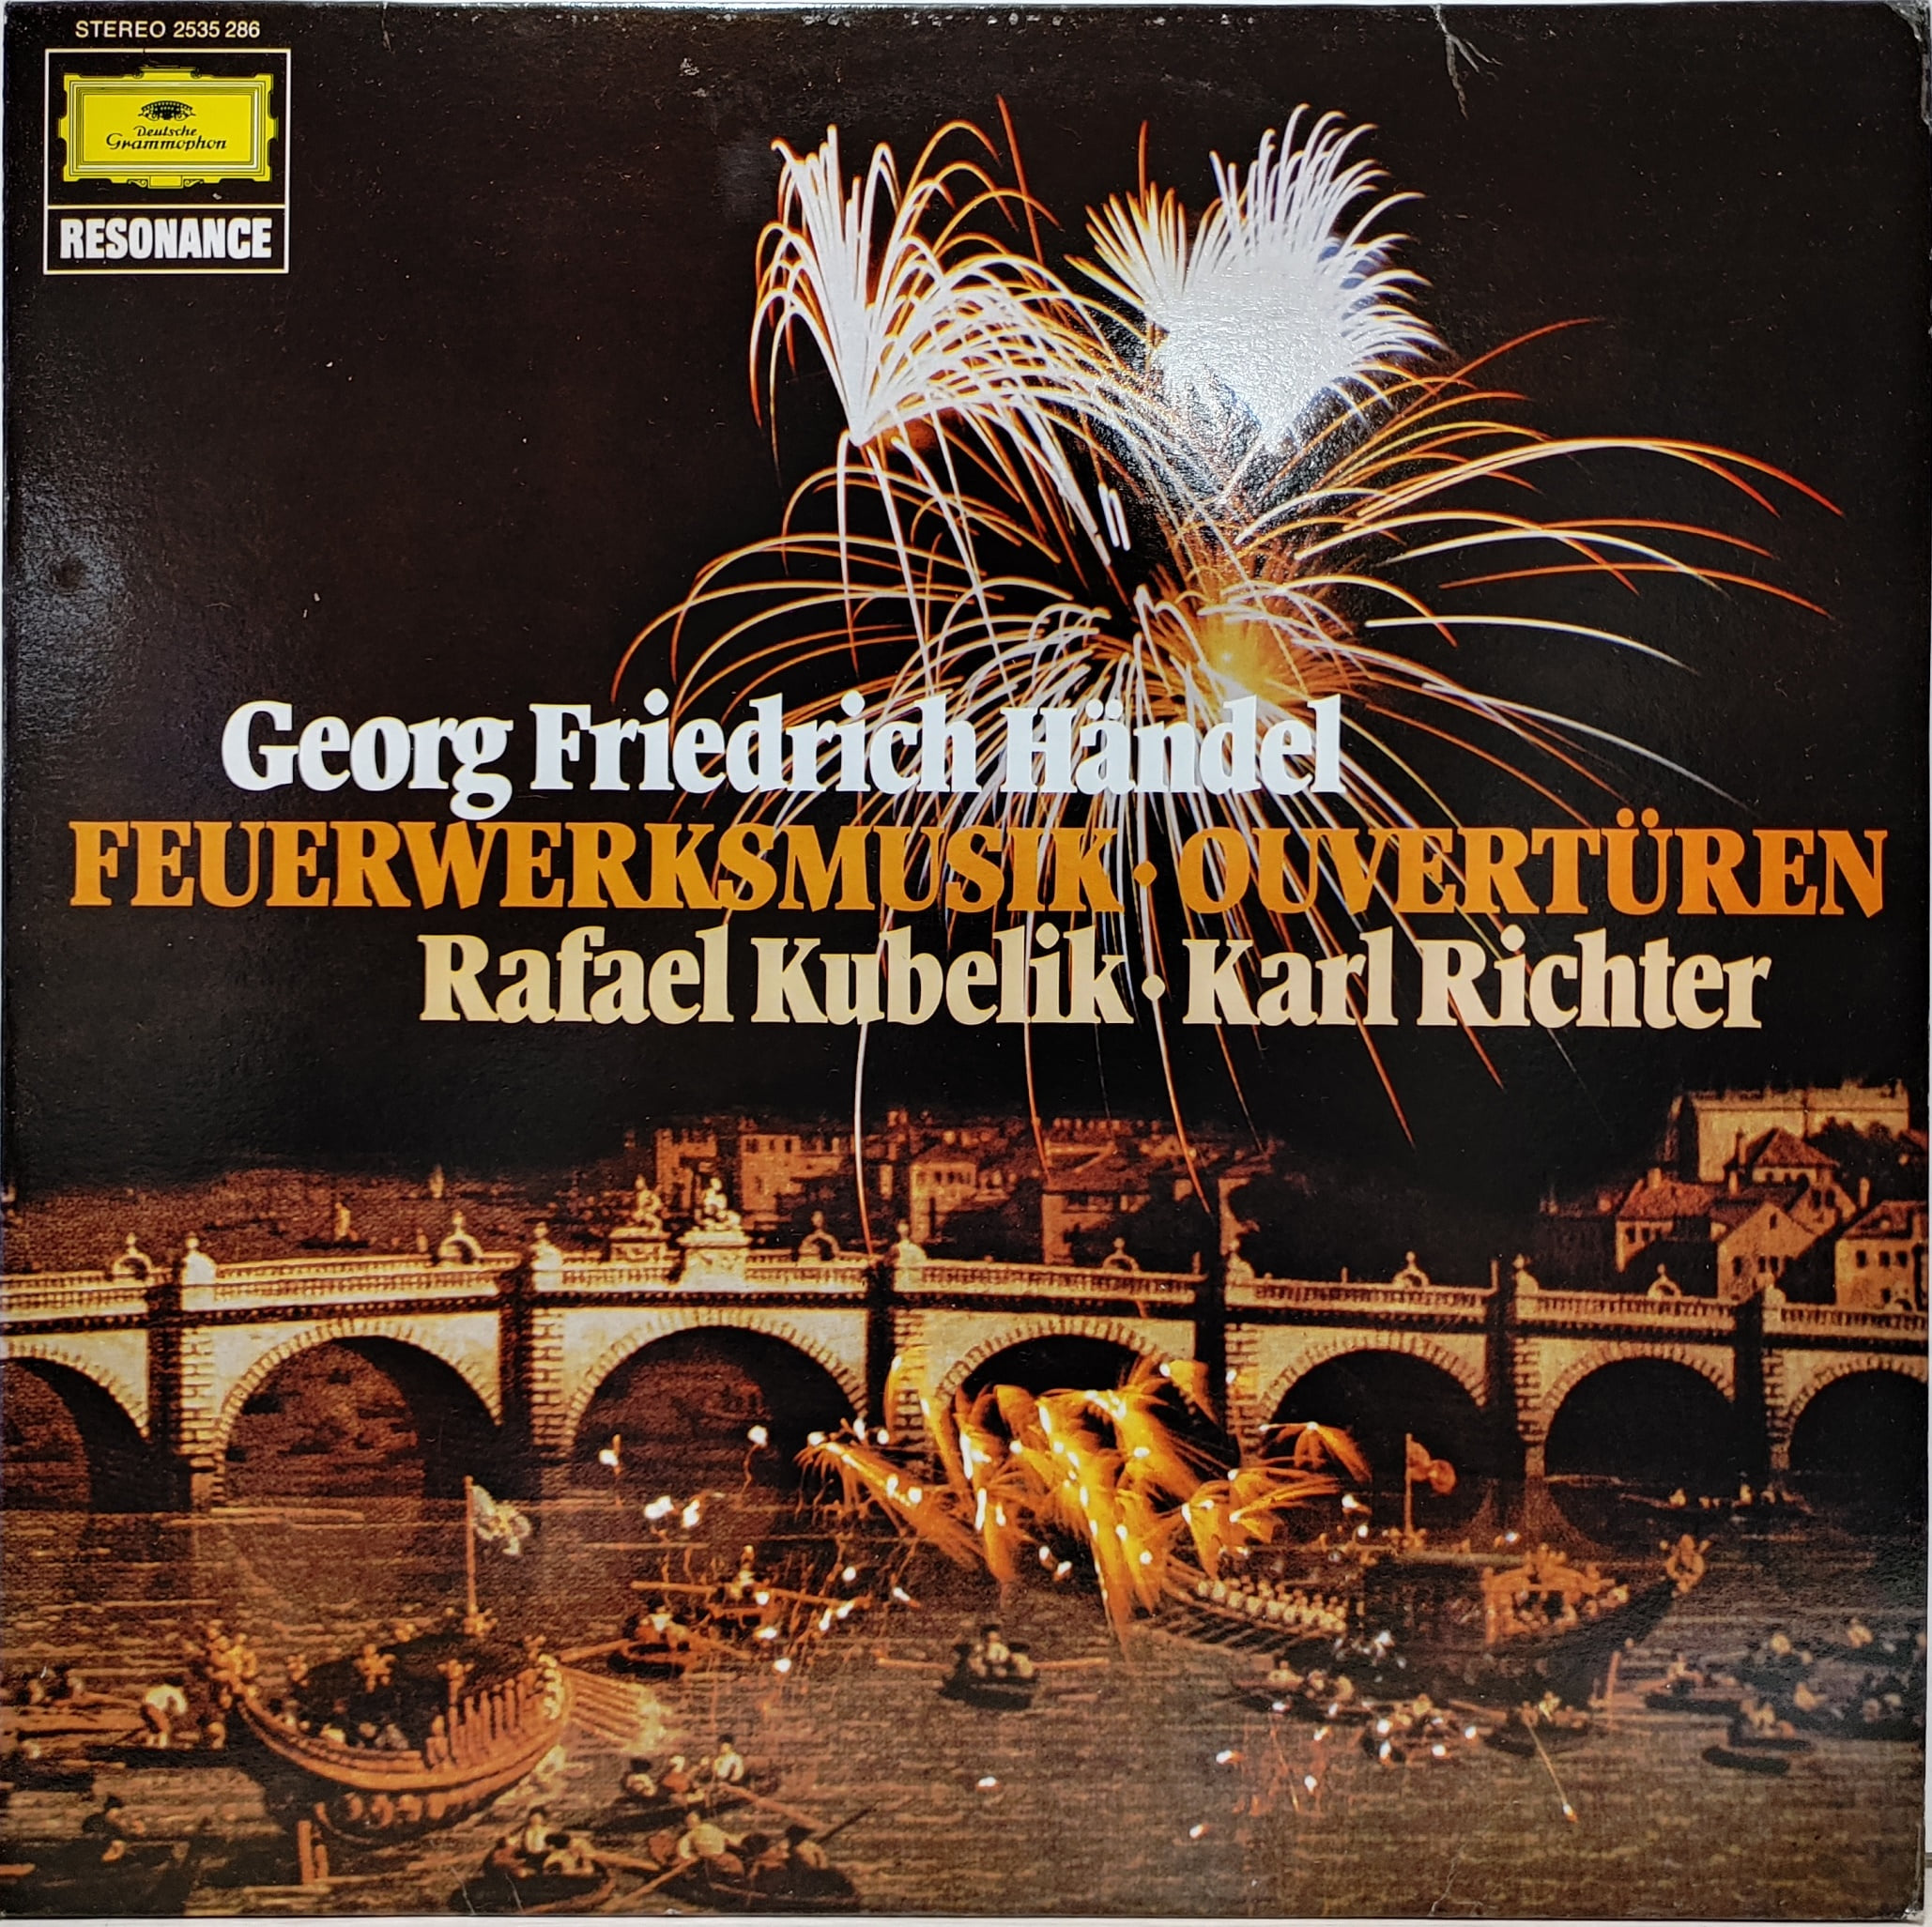 Handel / Feuerwerksmusik, Ouverturen Rafael Kubelik Karl Richter